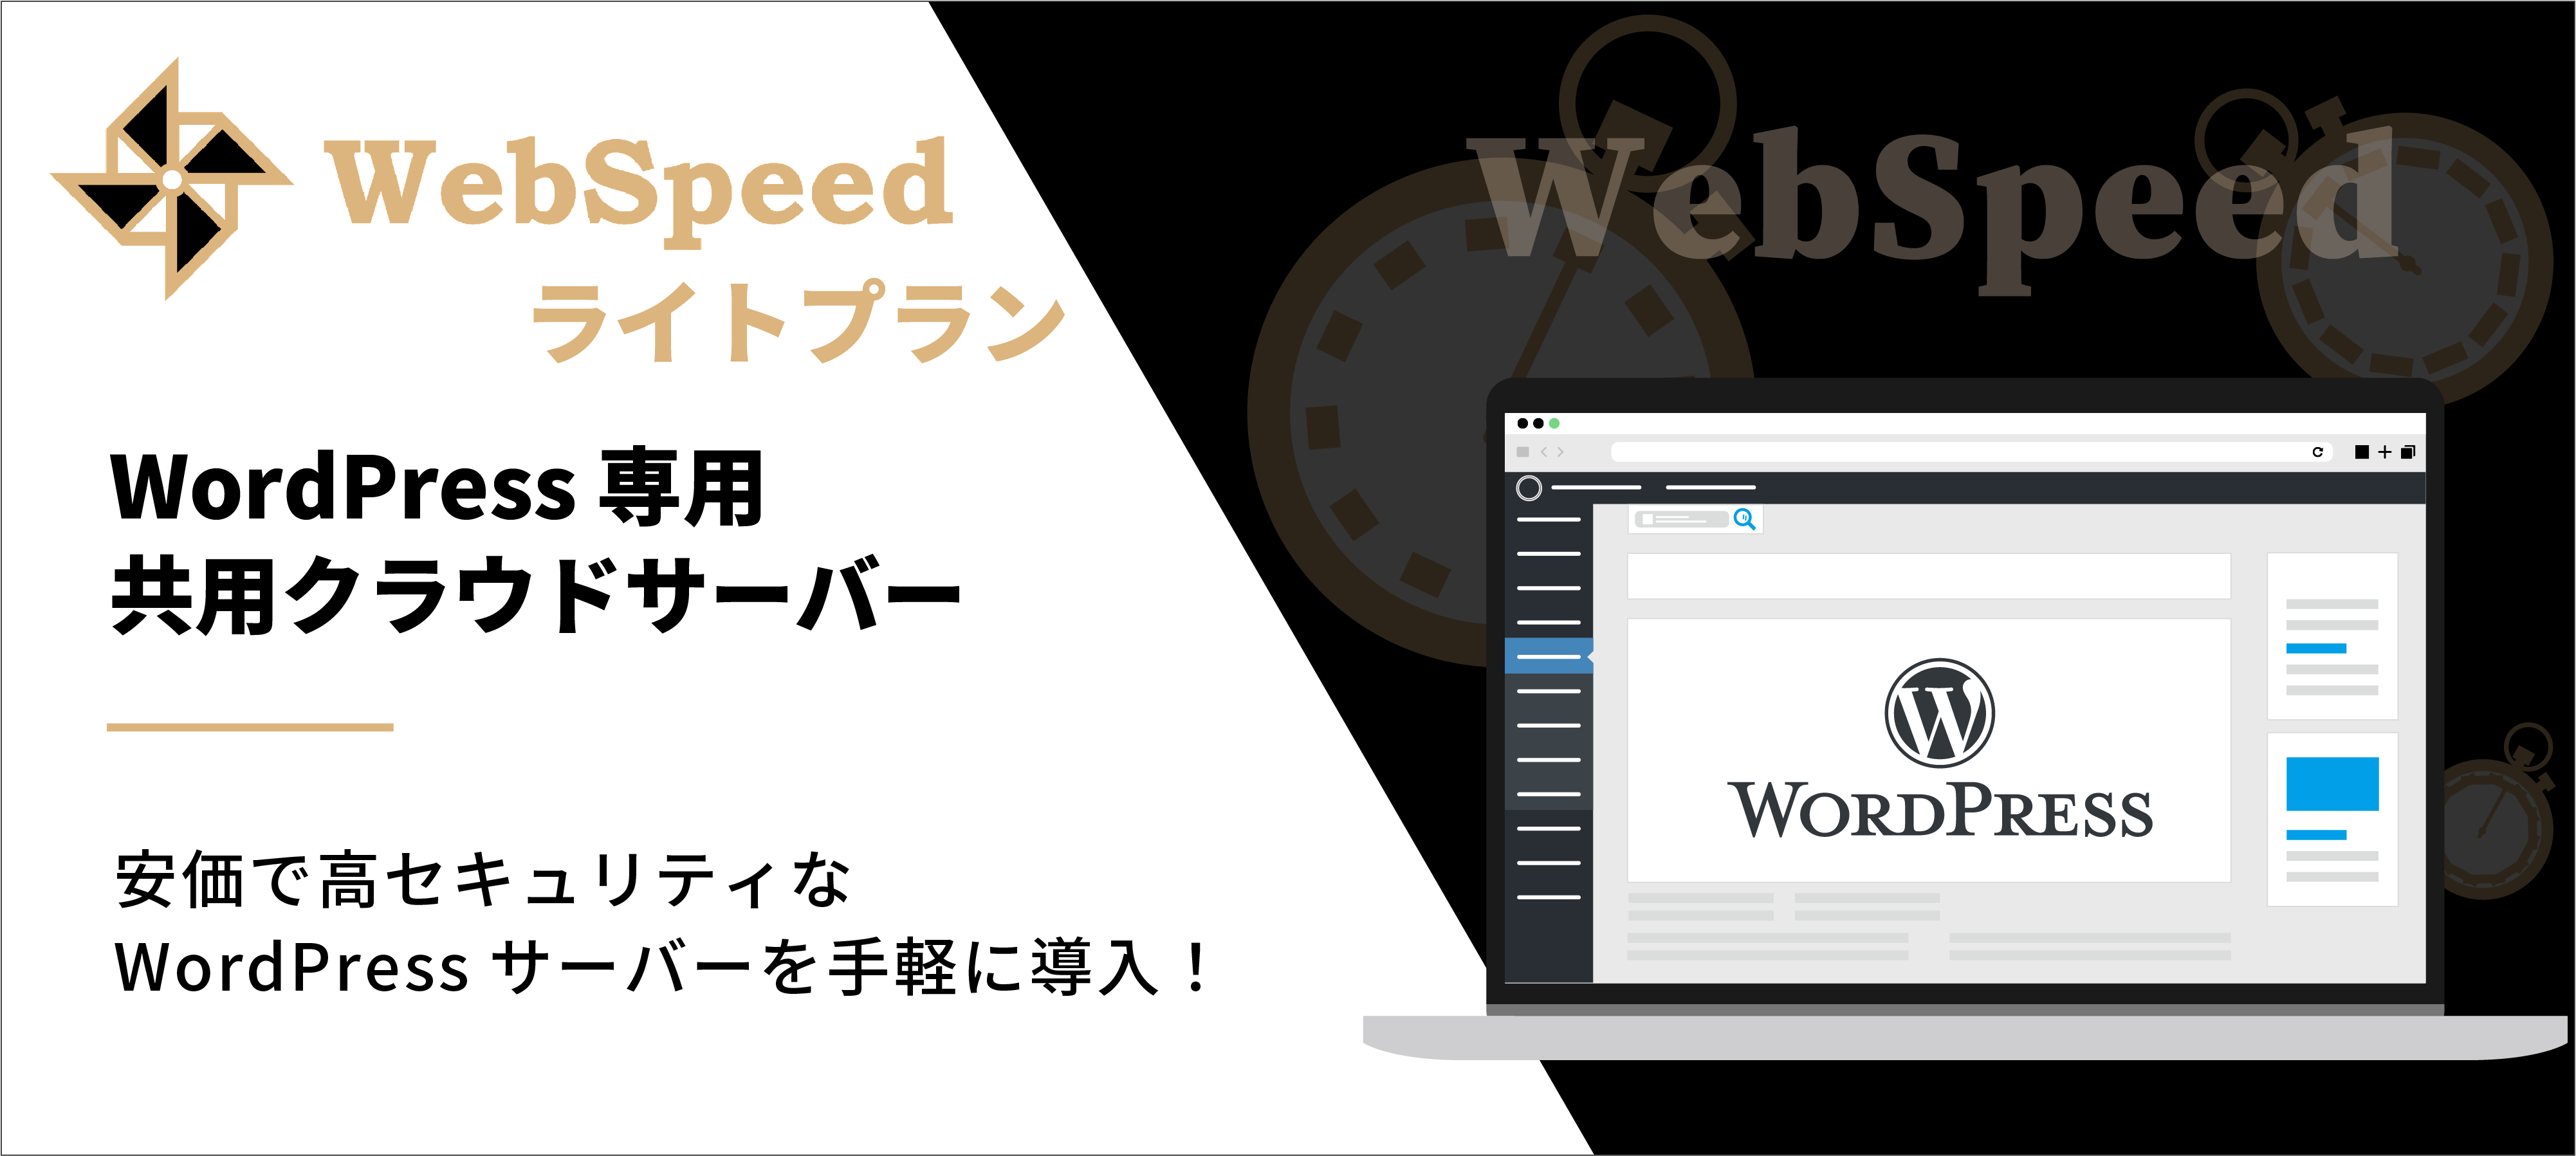 シェア率No.1のCMS「WordPress」専用クラウドサーバー
「ウェブスピード ライトプラン」を月額4,980円で提供開始 – Net24